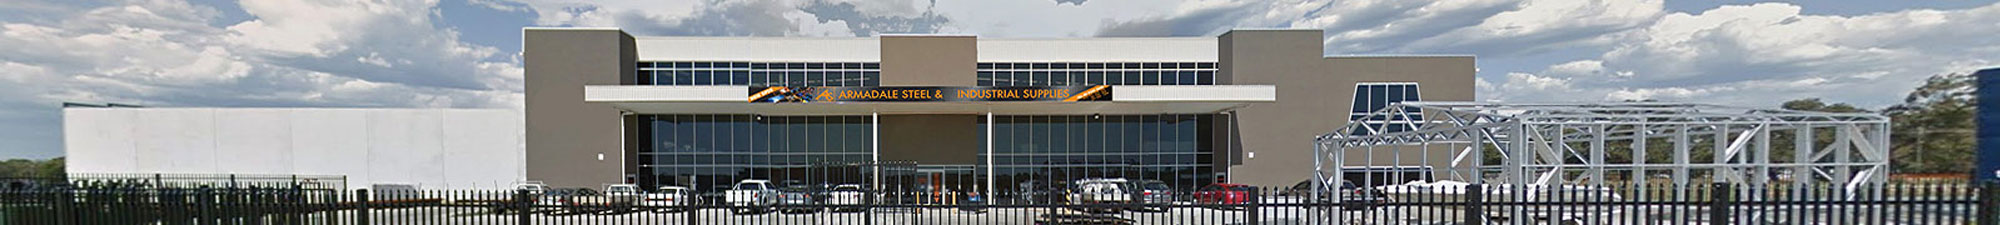 Armadale Steel & Industrial Supplies - Premises